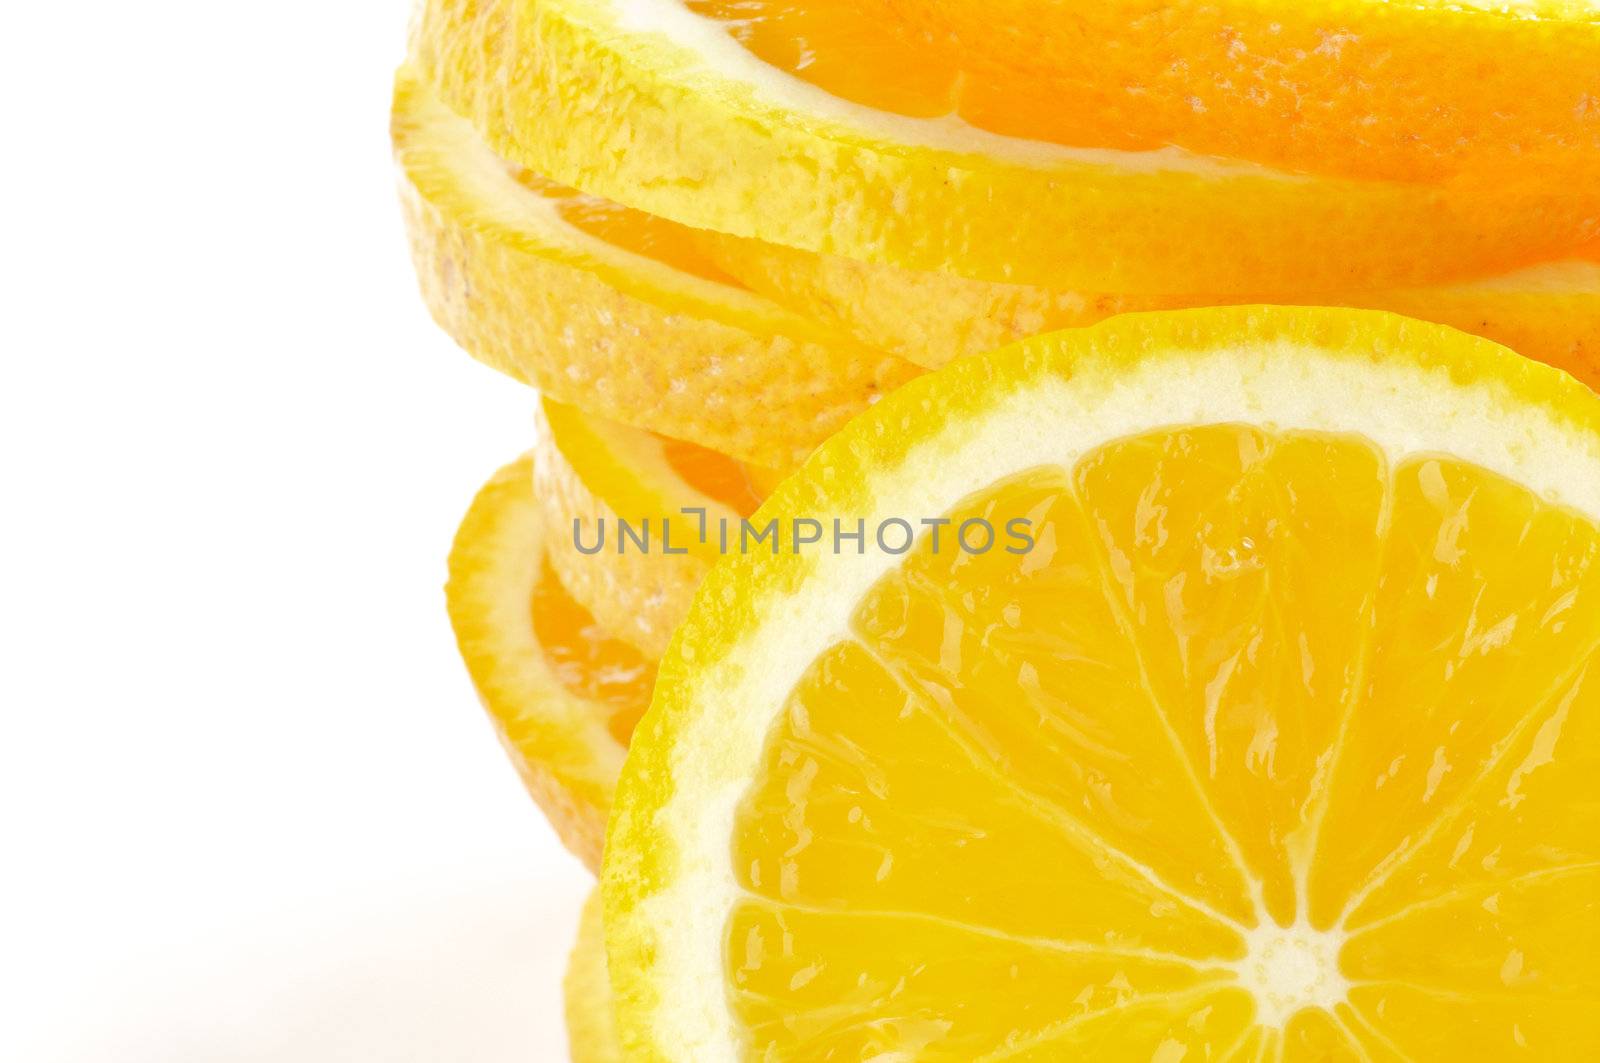 Stack of Sliced oranges frame by zhekos